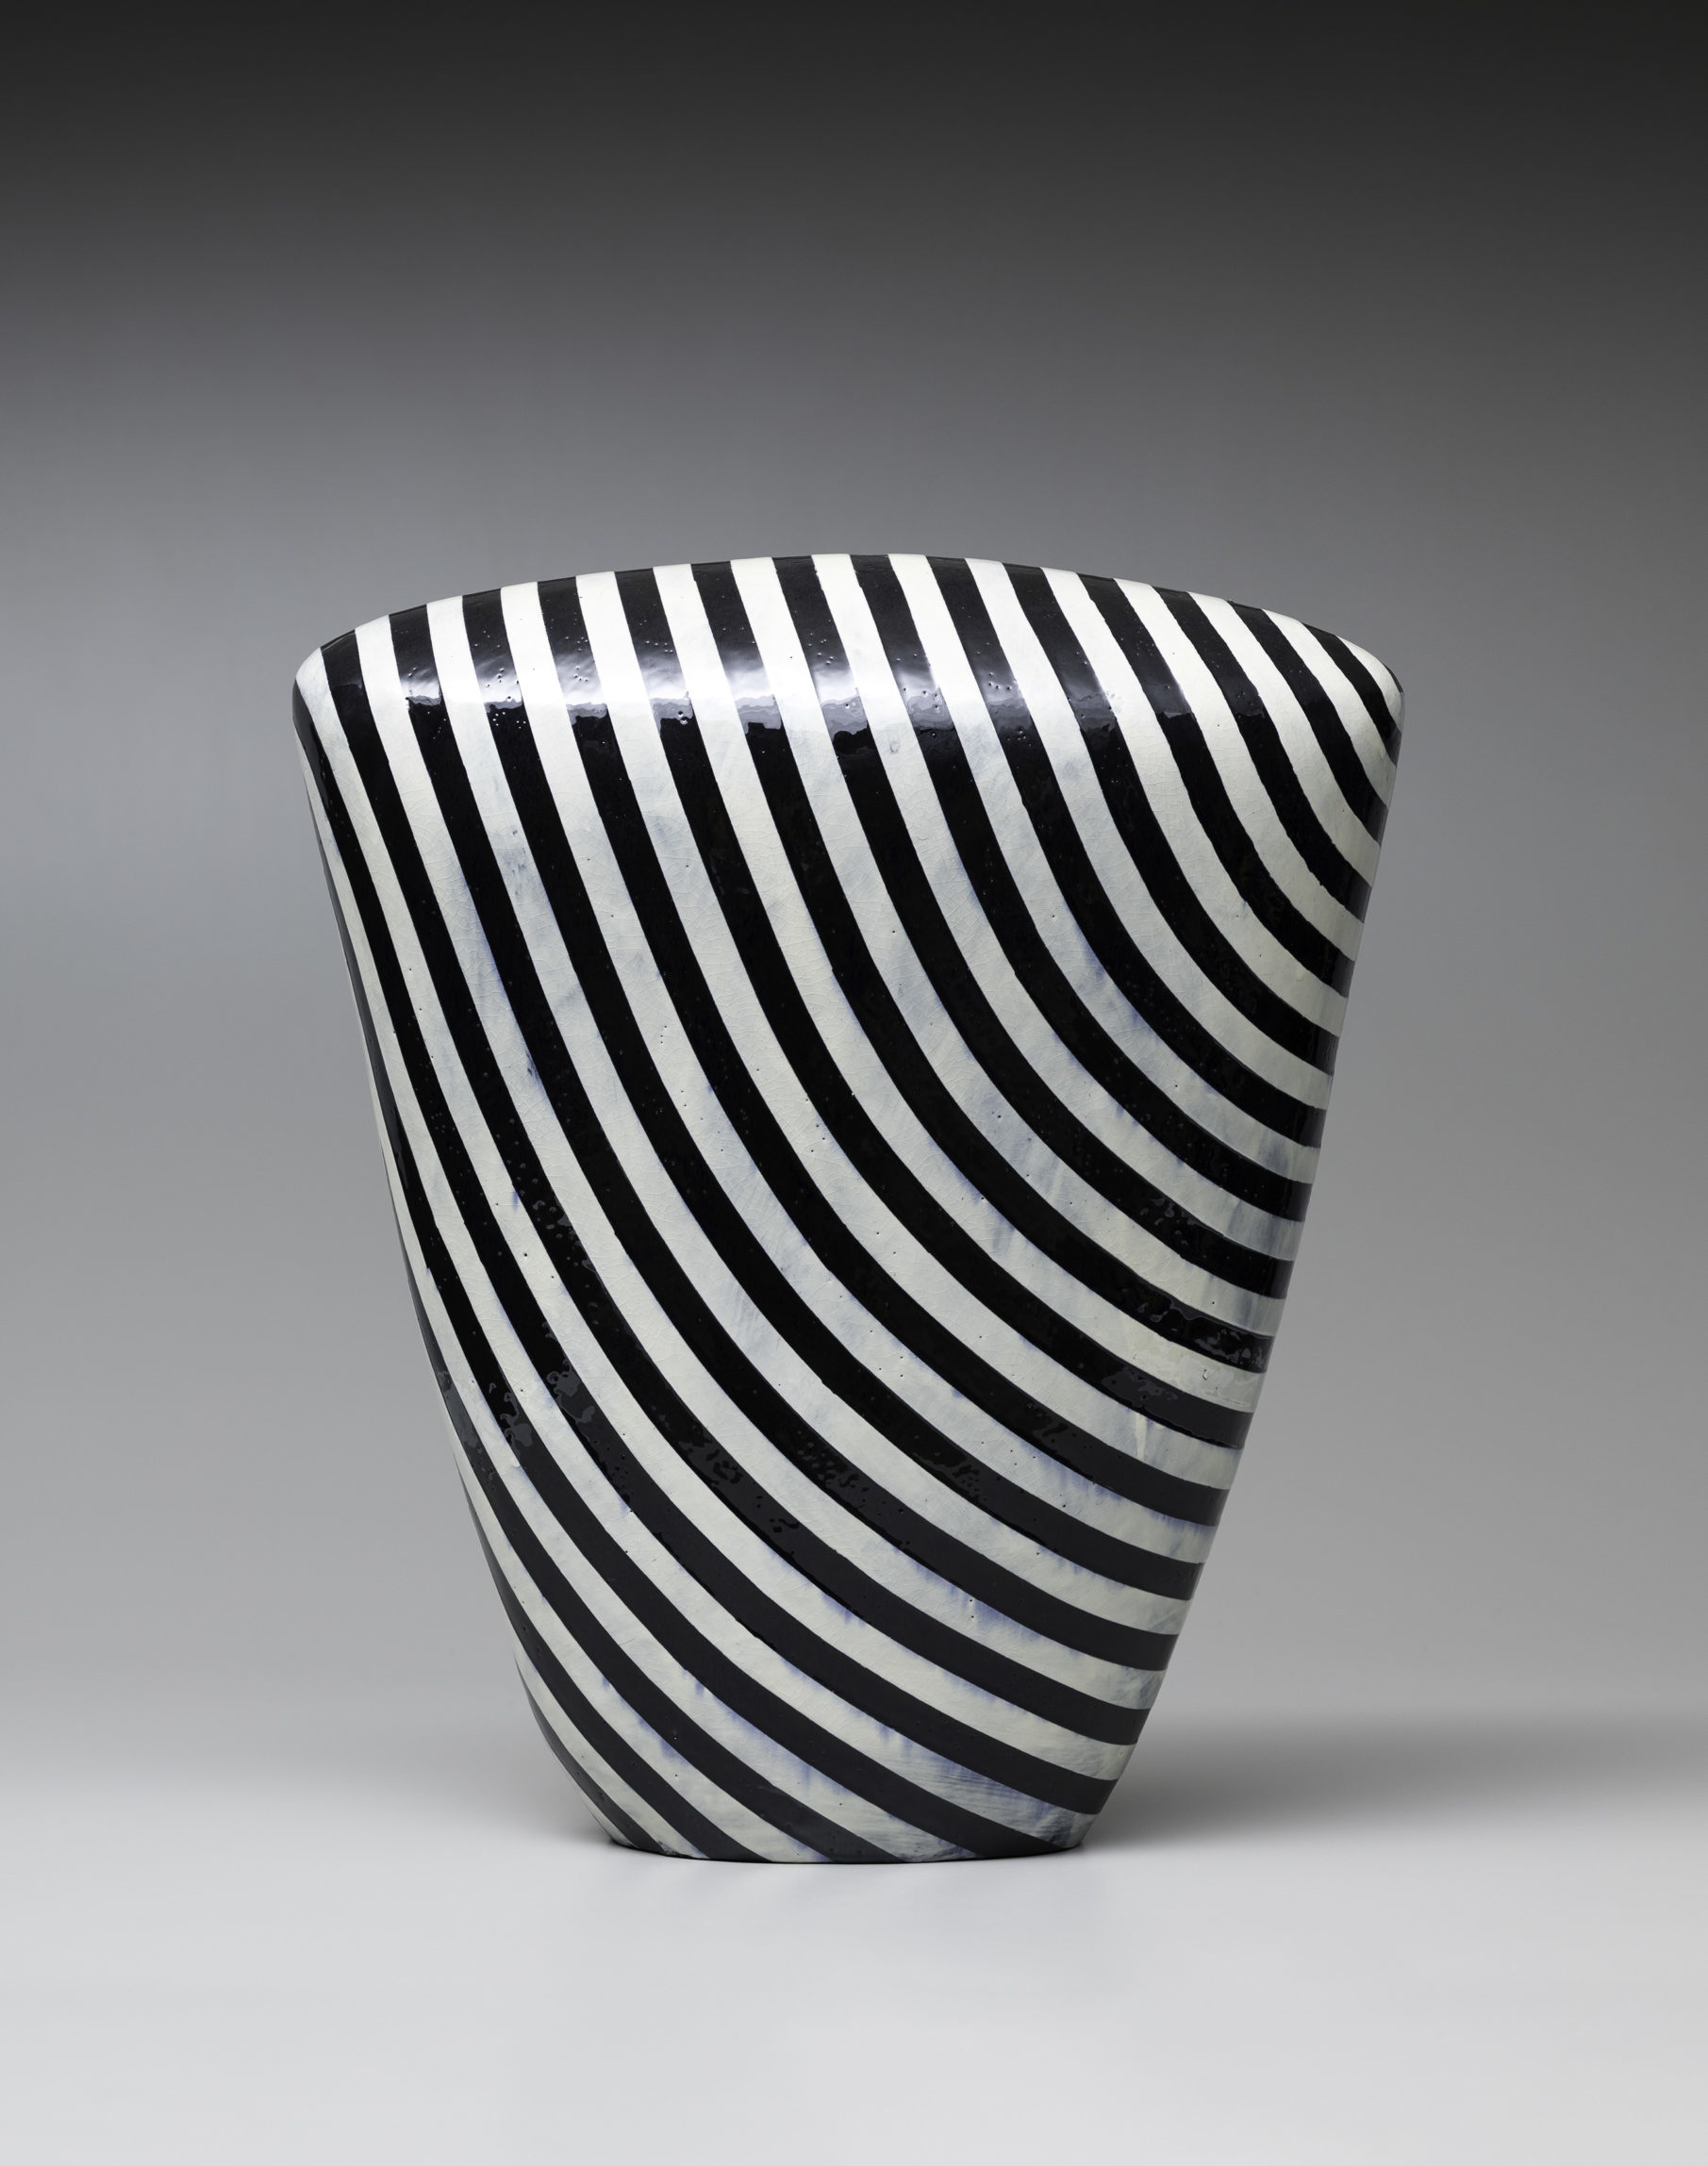 

											Jun Kaneko</b>

											<em>
												</em> 

											<h4>
												Santa Fe: September 9 – November 26, 2022											</h4>

		                																																													<i>Untitled,</i>  
																																								2020, 
																																								glazed ceramics, 
																																								25 x 21 1/2 x 10 1/4 inches 
																								
		                				